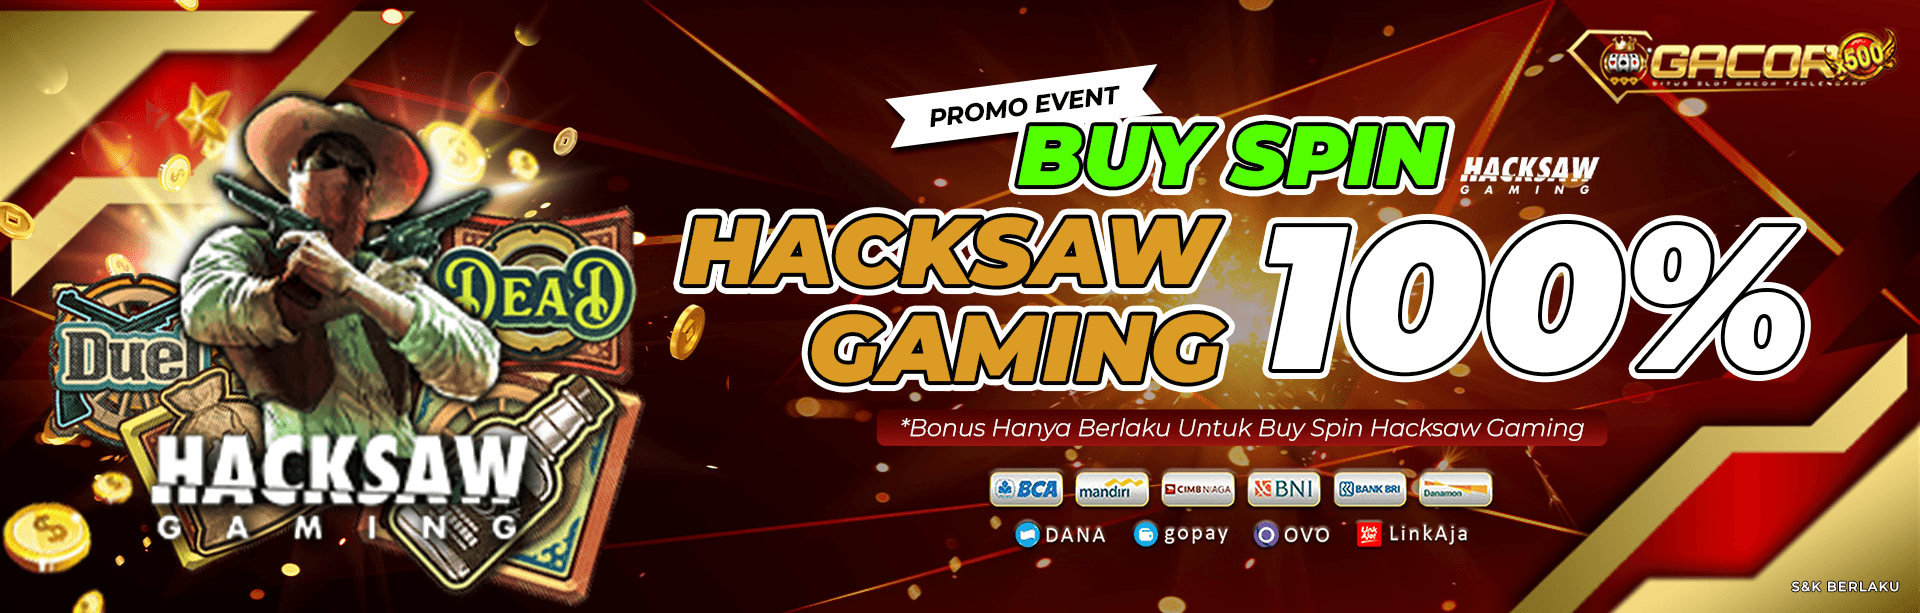 Promo Event Buy Spin Hackshaw Gaming 100%